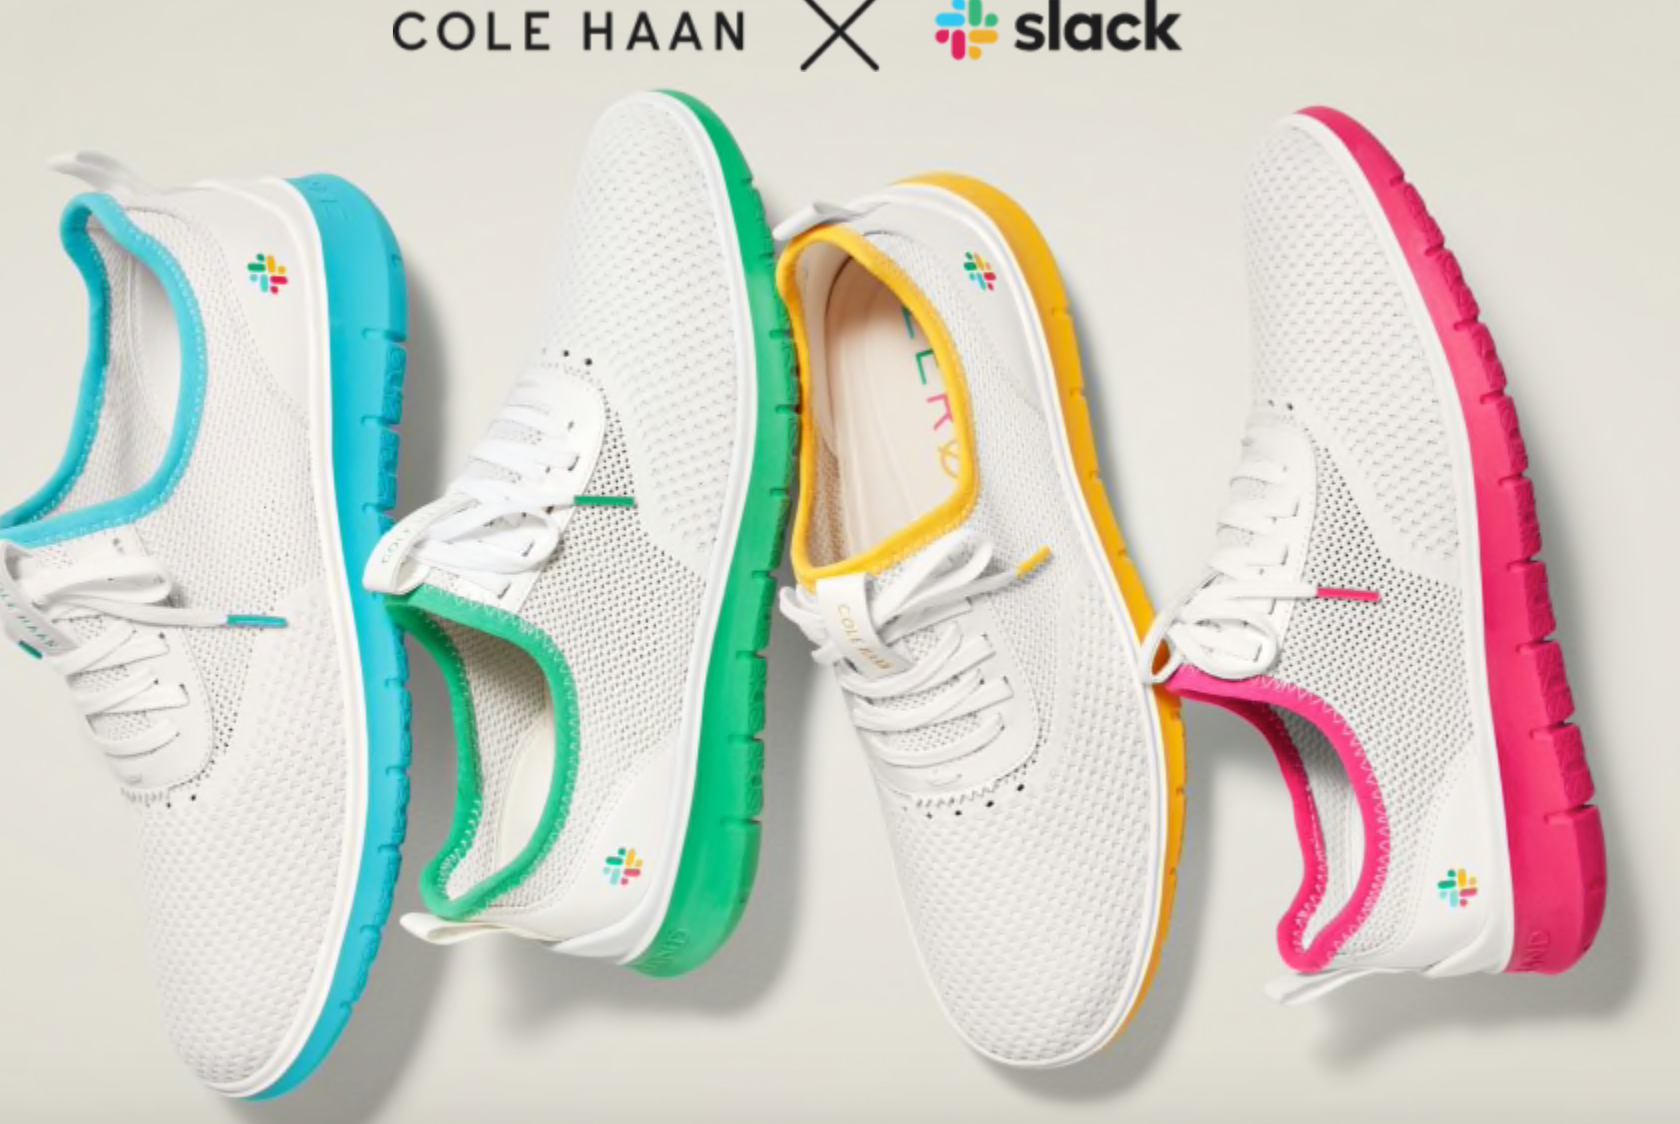 Cole Haan and Slack sneaker 